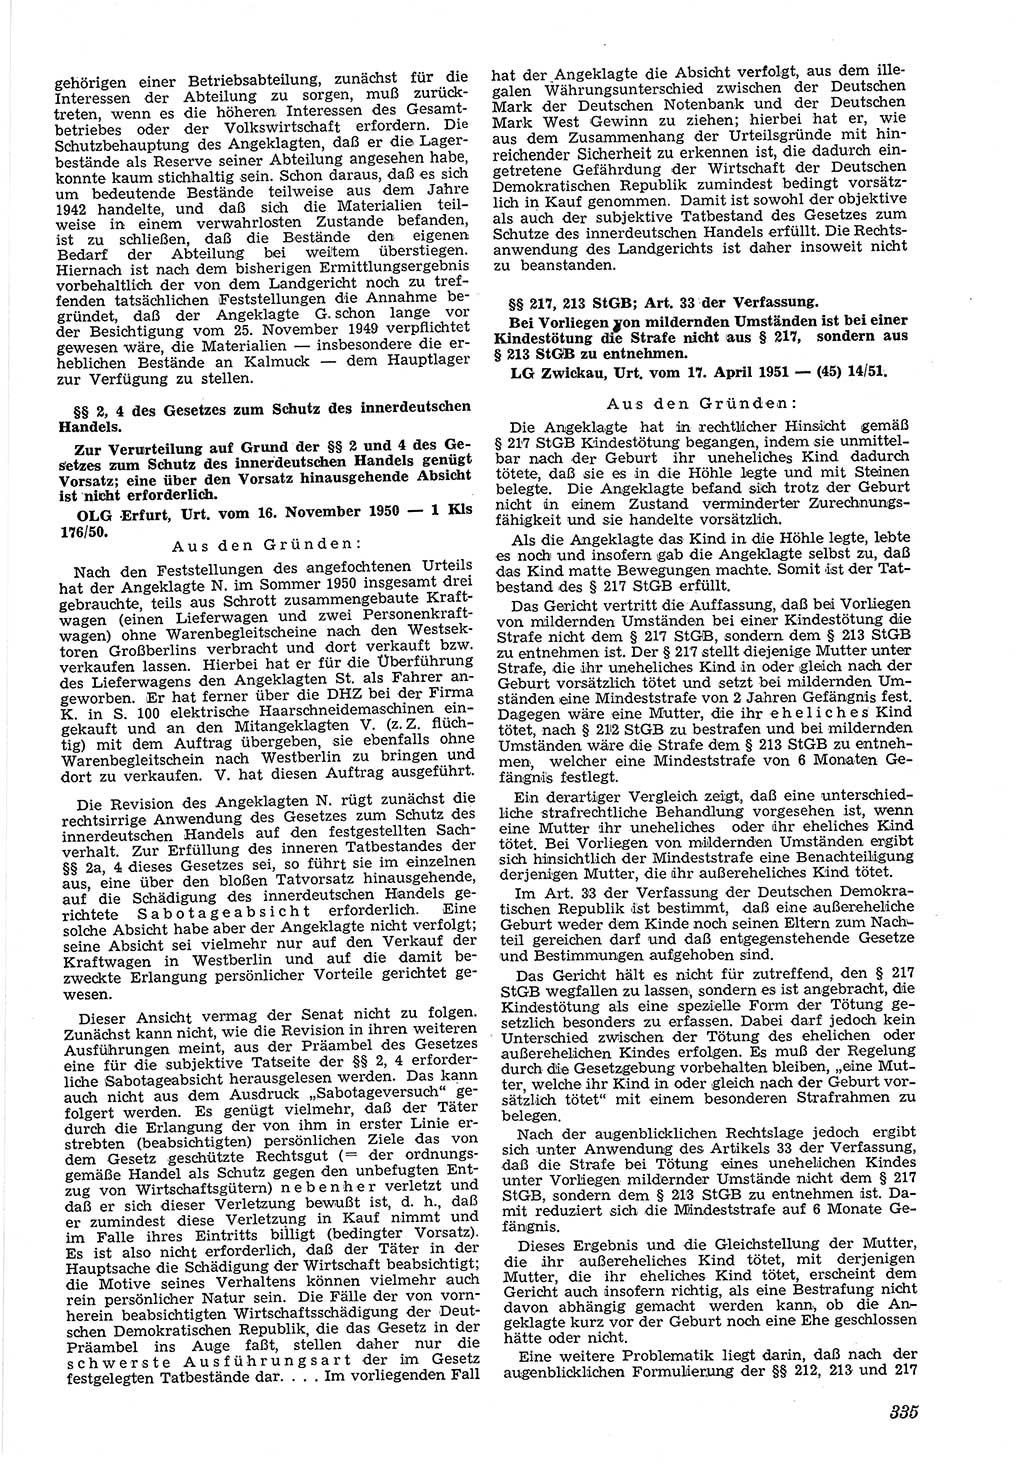 Neue Justiz (NJ), Zeitschrift für Recht und Rechtswissenschaft [Deutsche Demokratische Republik (DDR)], 5. Jahrgang 1951, Seite 335 (NJ DDR 1951, S. 335)